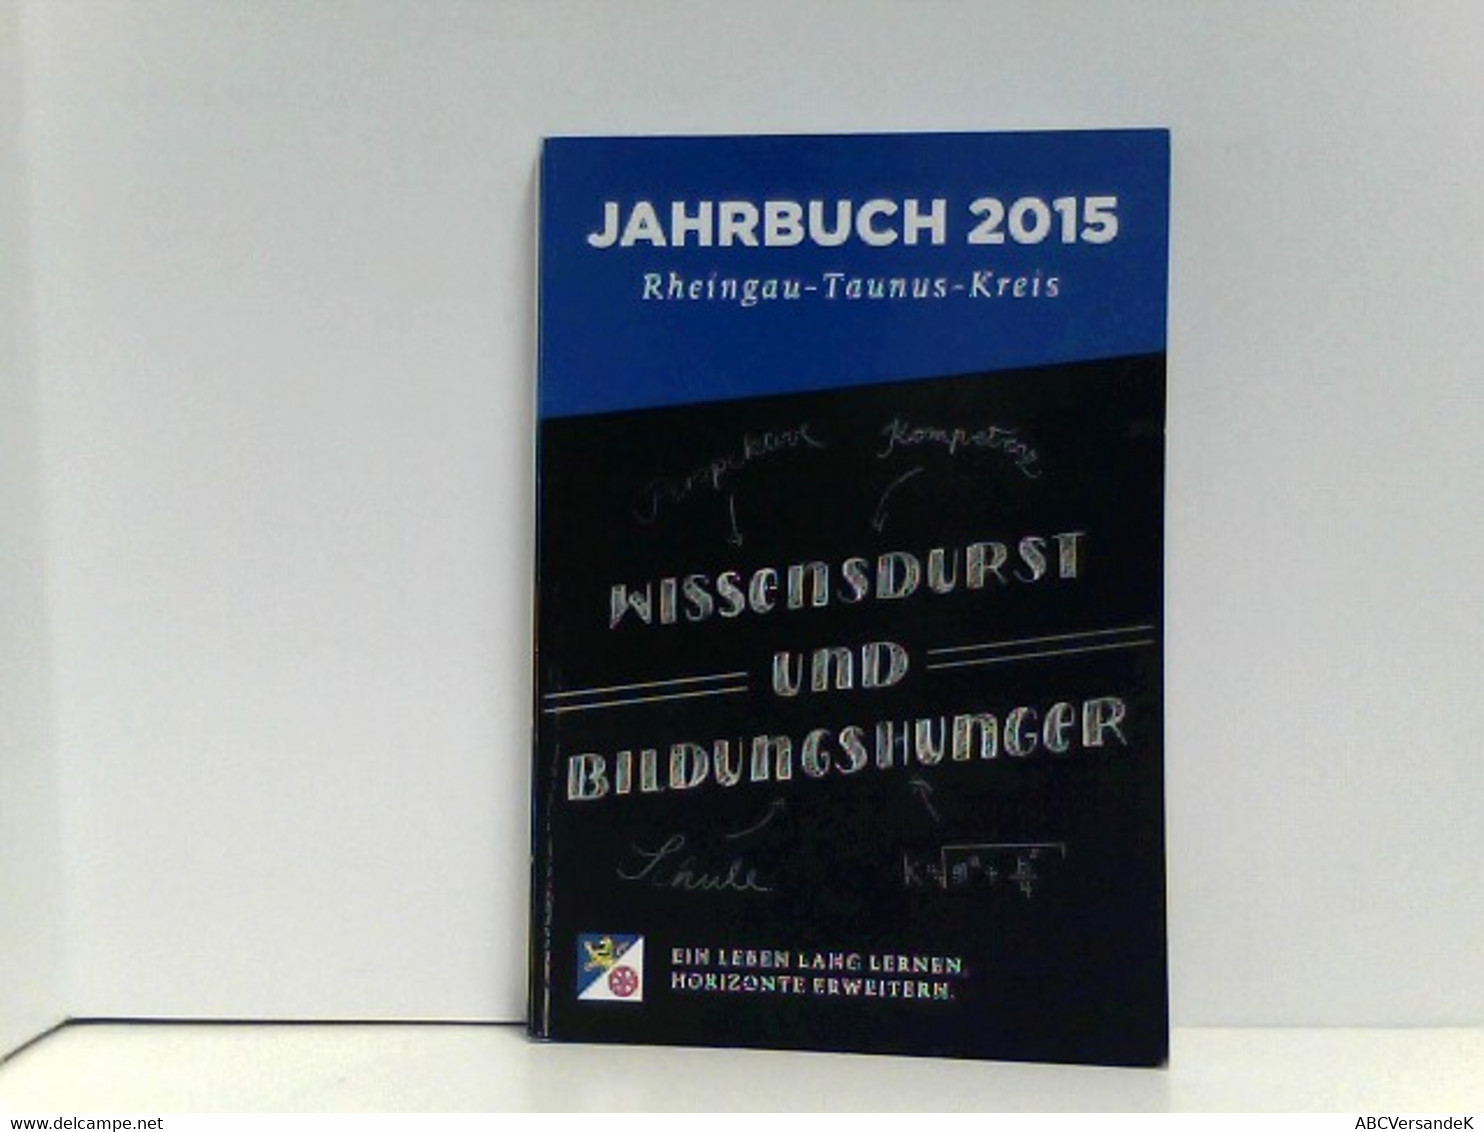 Jahrbuch 2015 Rheingau - Taunus - Kreis - Hesse